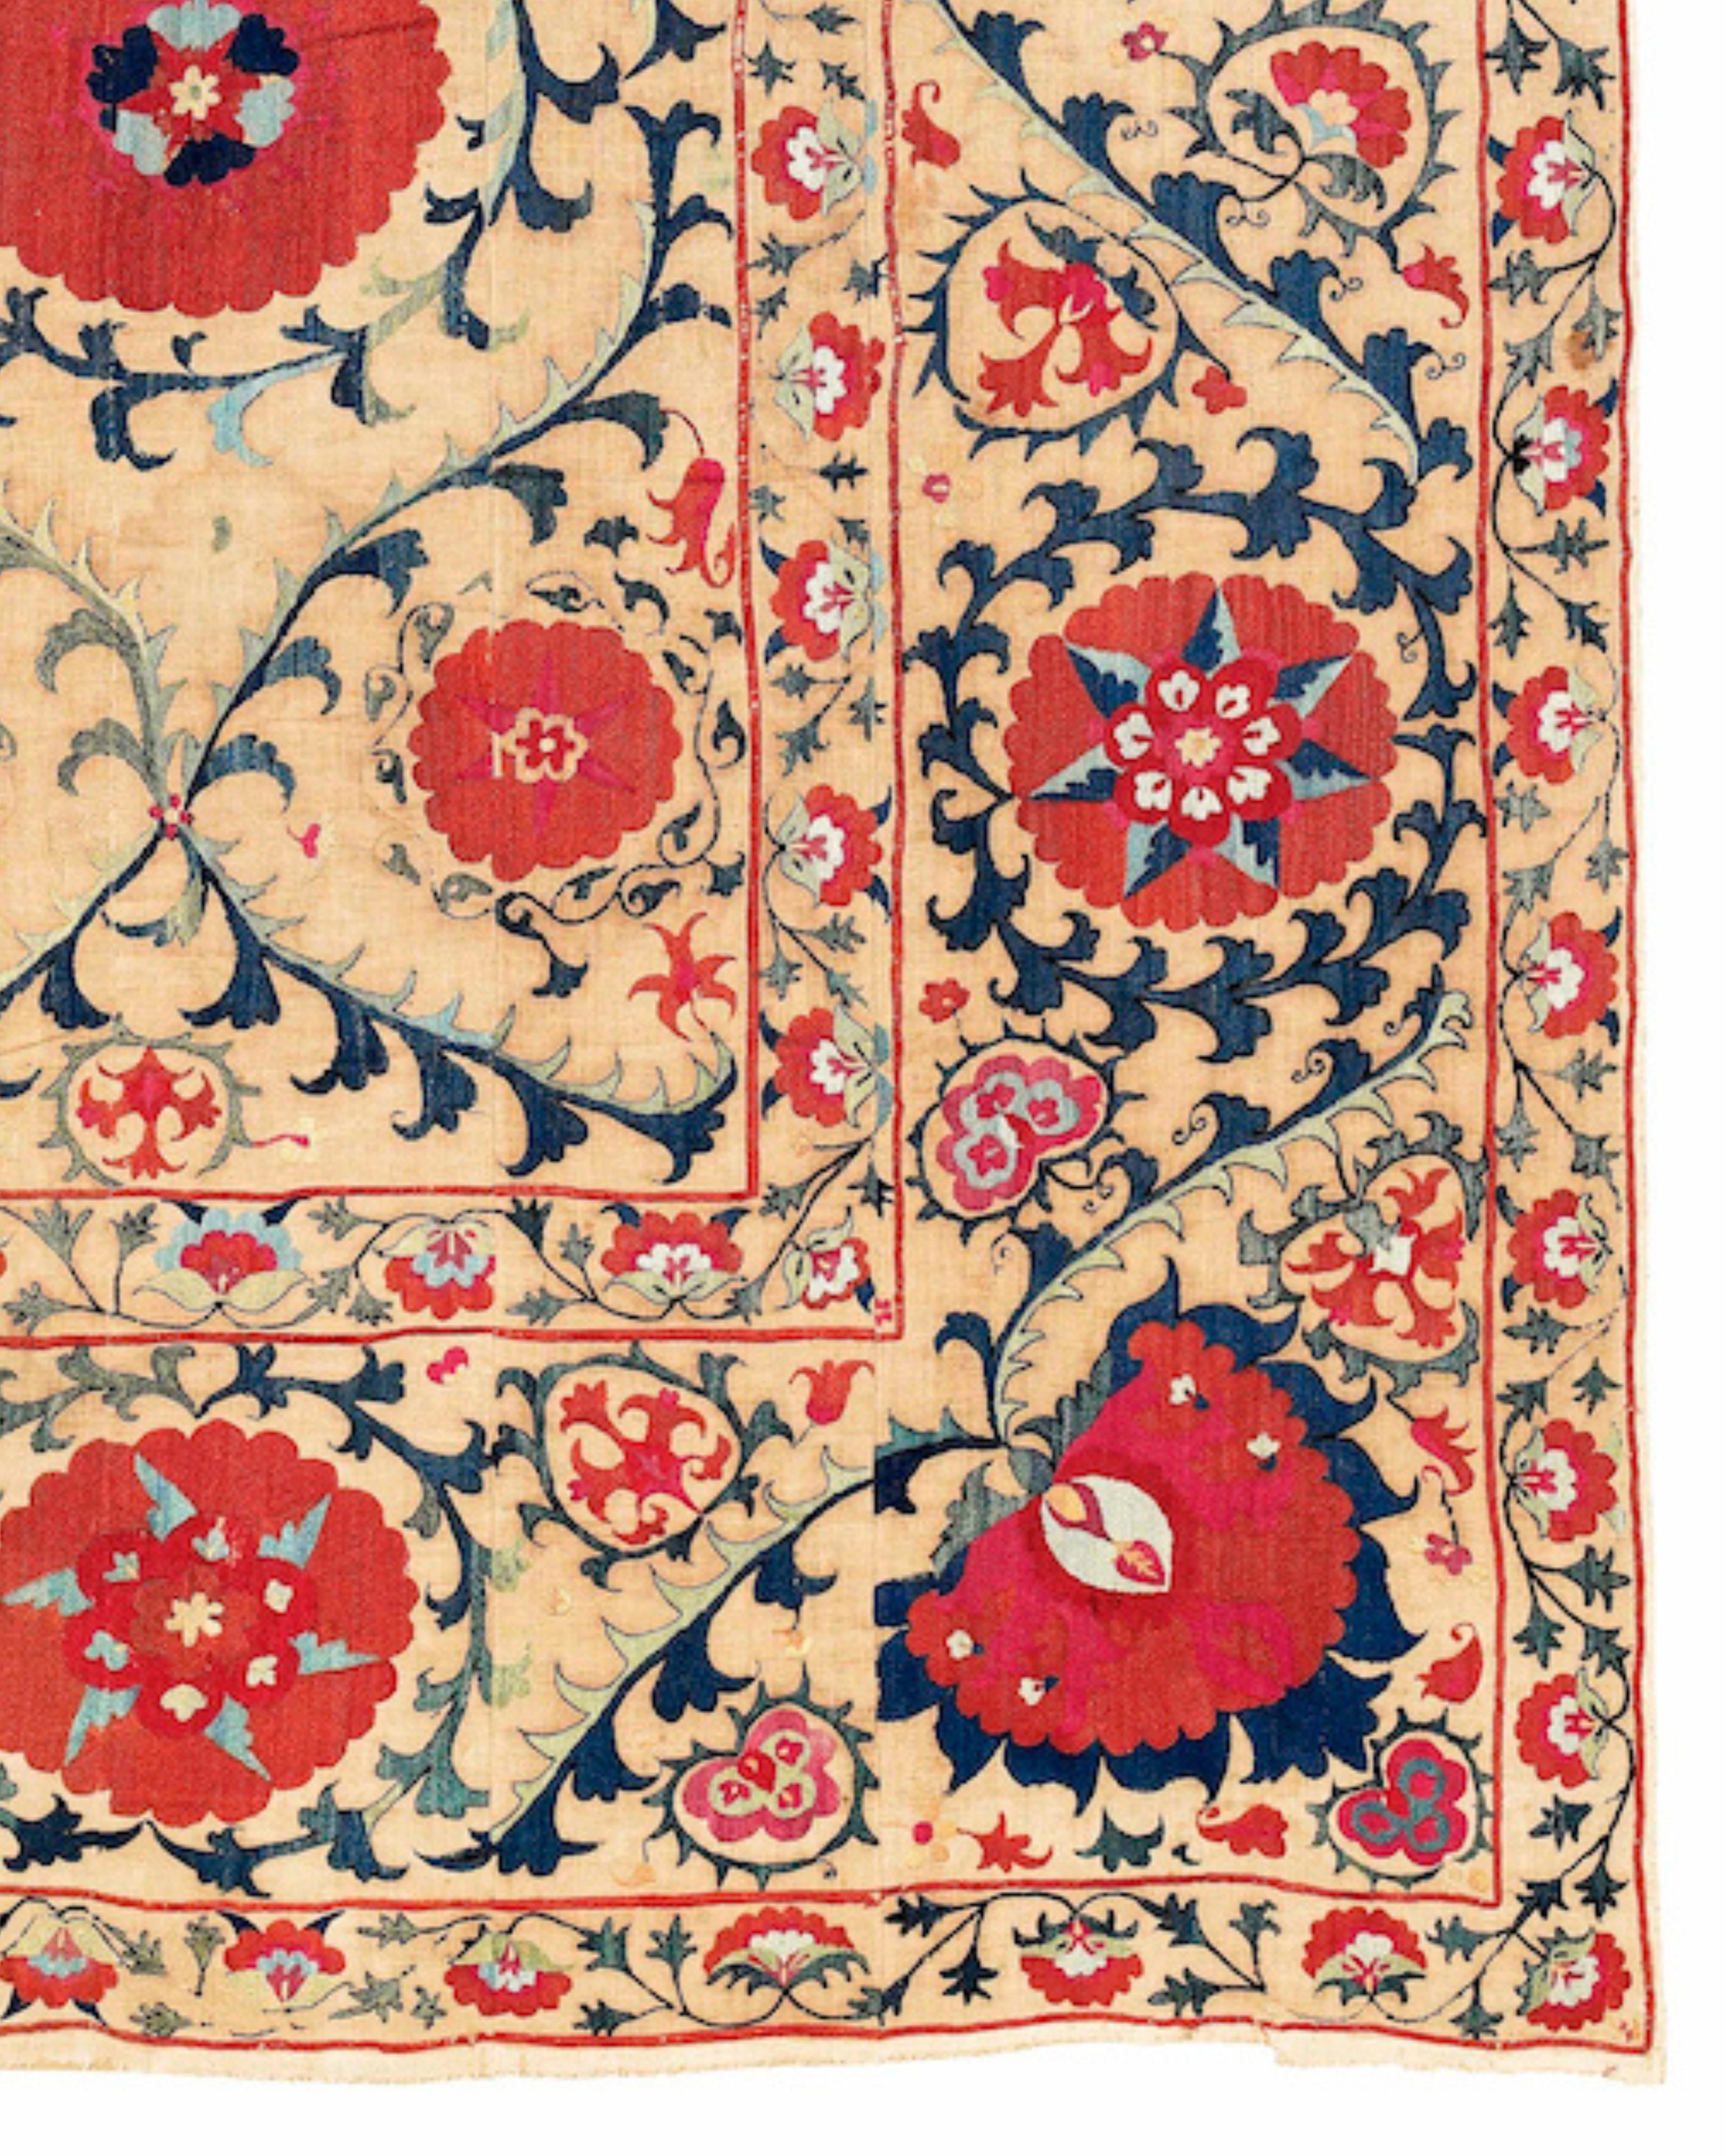 Antike usbekische Suzani-Stickerei, um 1800

Diese spektakuläre Stickerei oder 